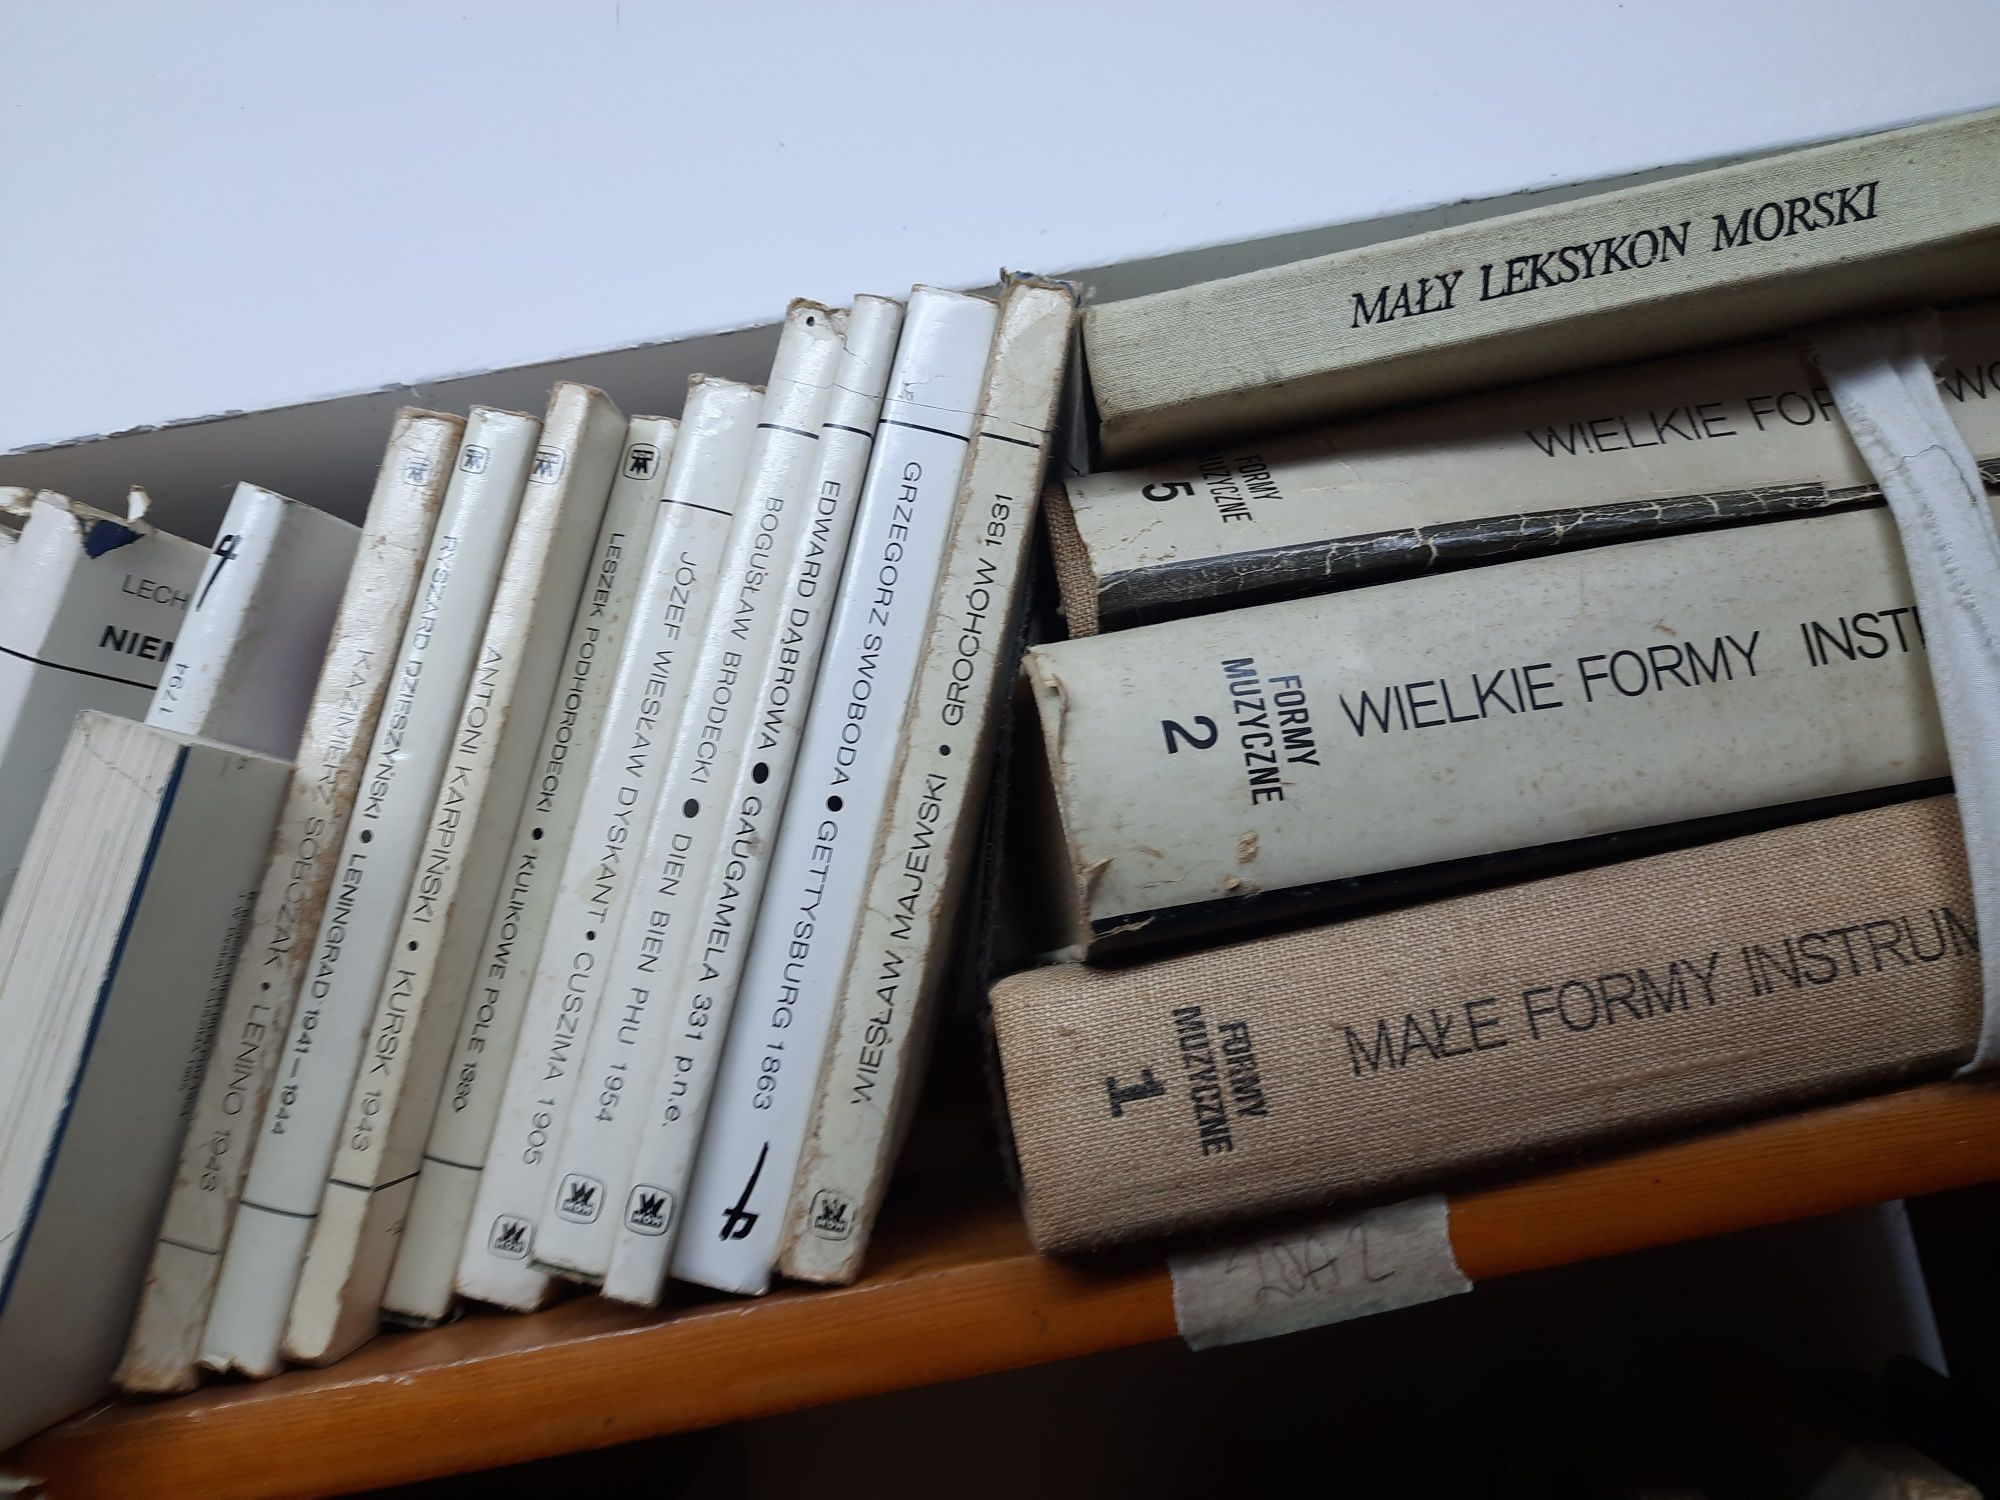 Biblioteka beletrystyczna muzyczna marynistyka księgozbiór